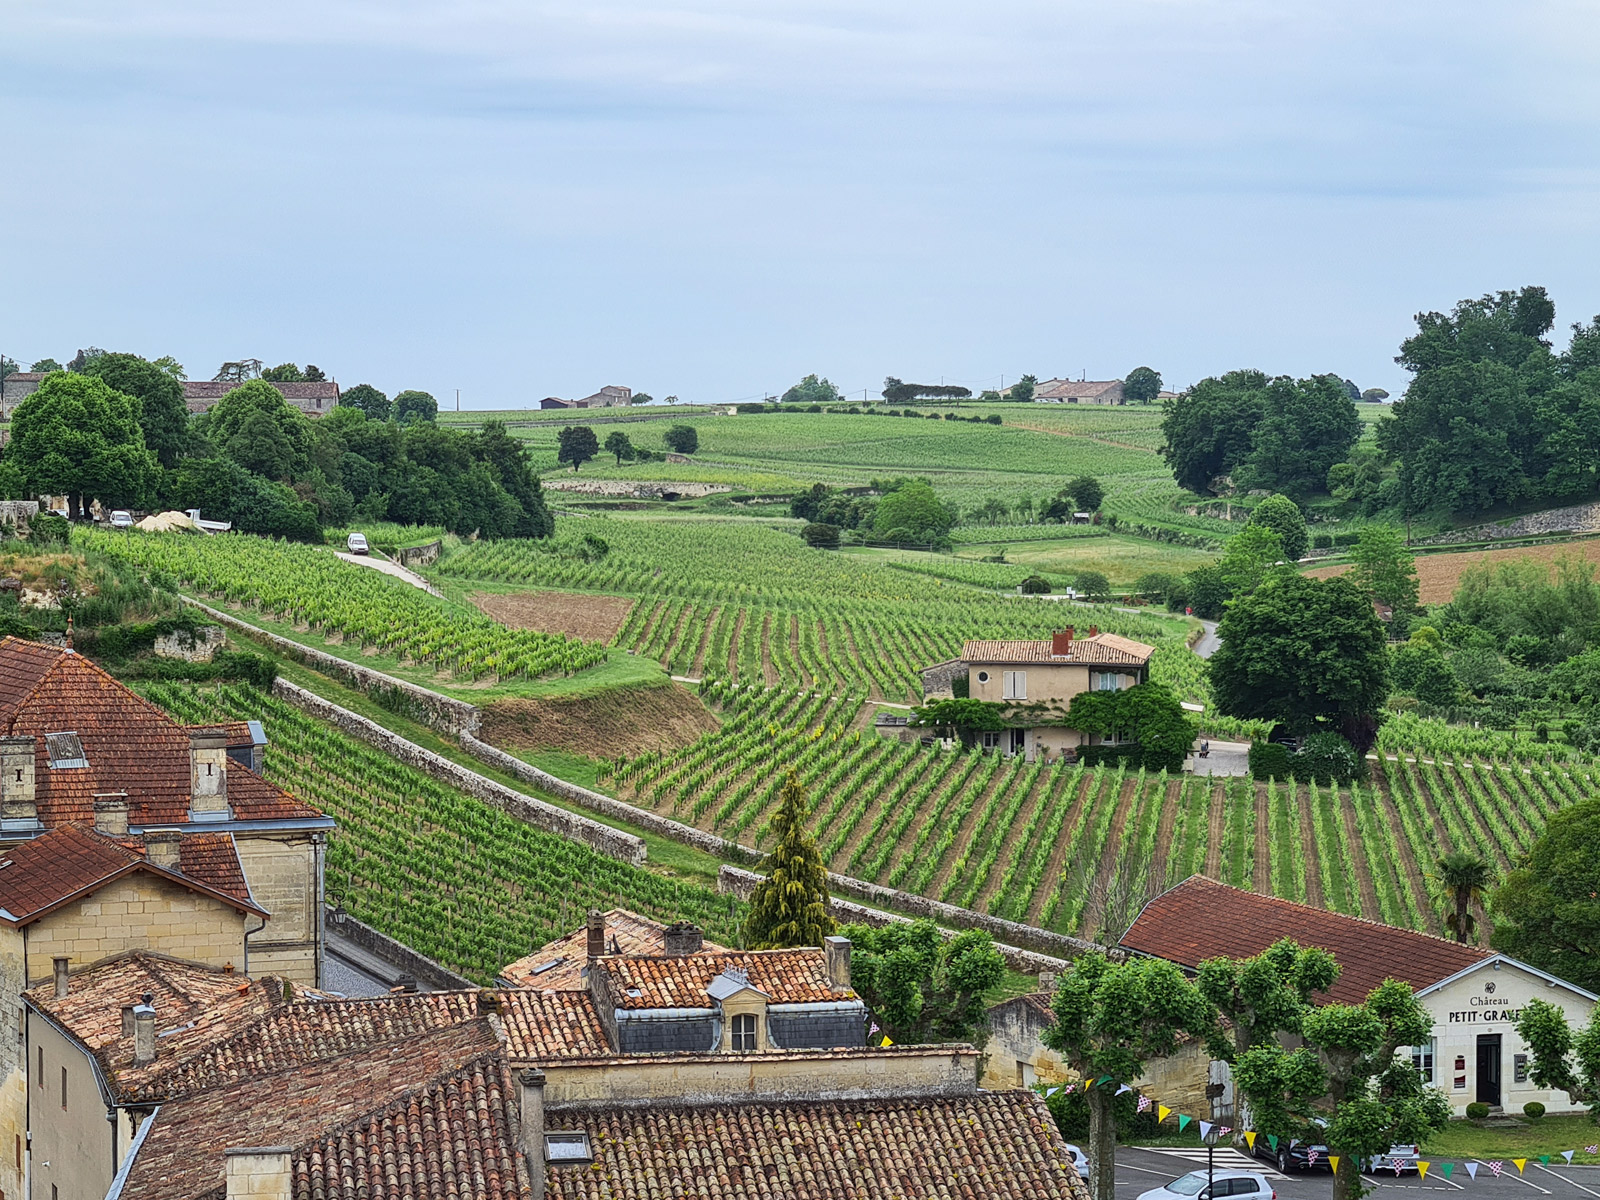 The Saint-Émilion vineyard